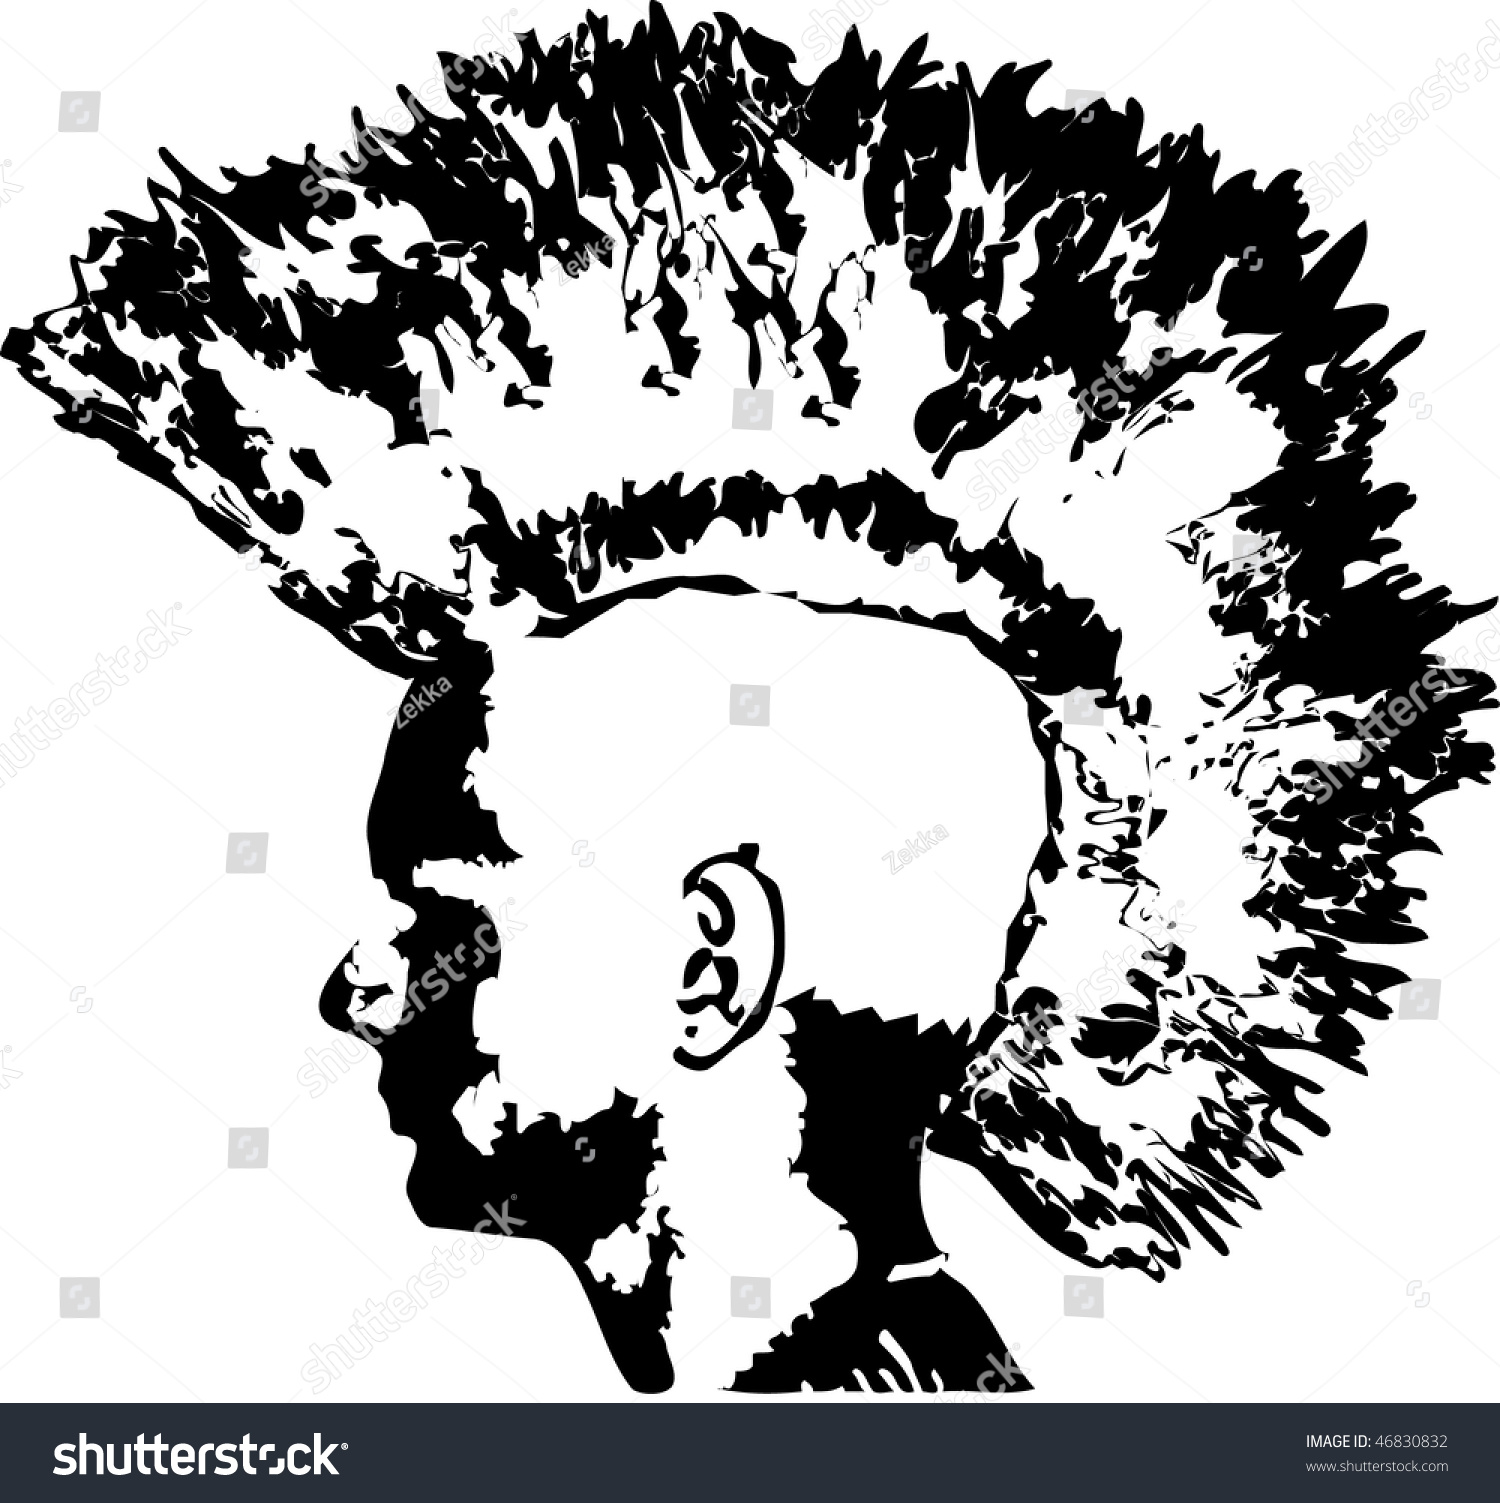 Stencil Punk Stock Vector Illustration 46830832 : Shutterstock